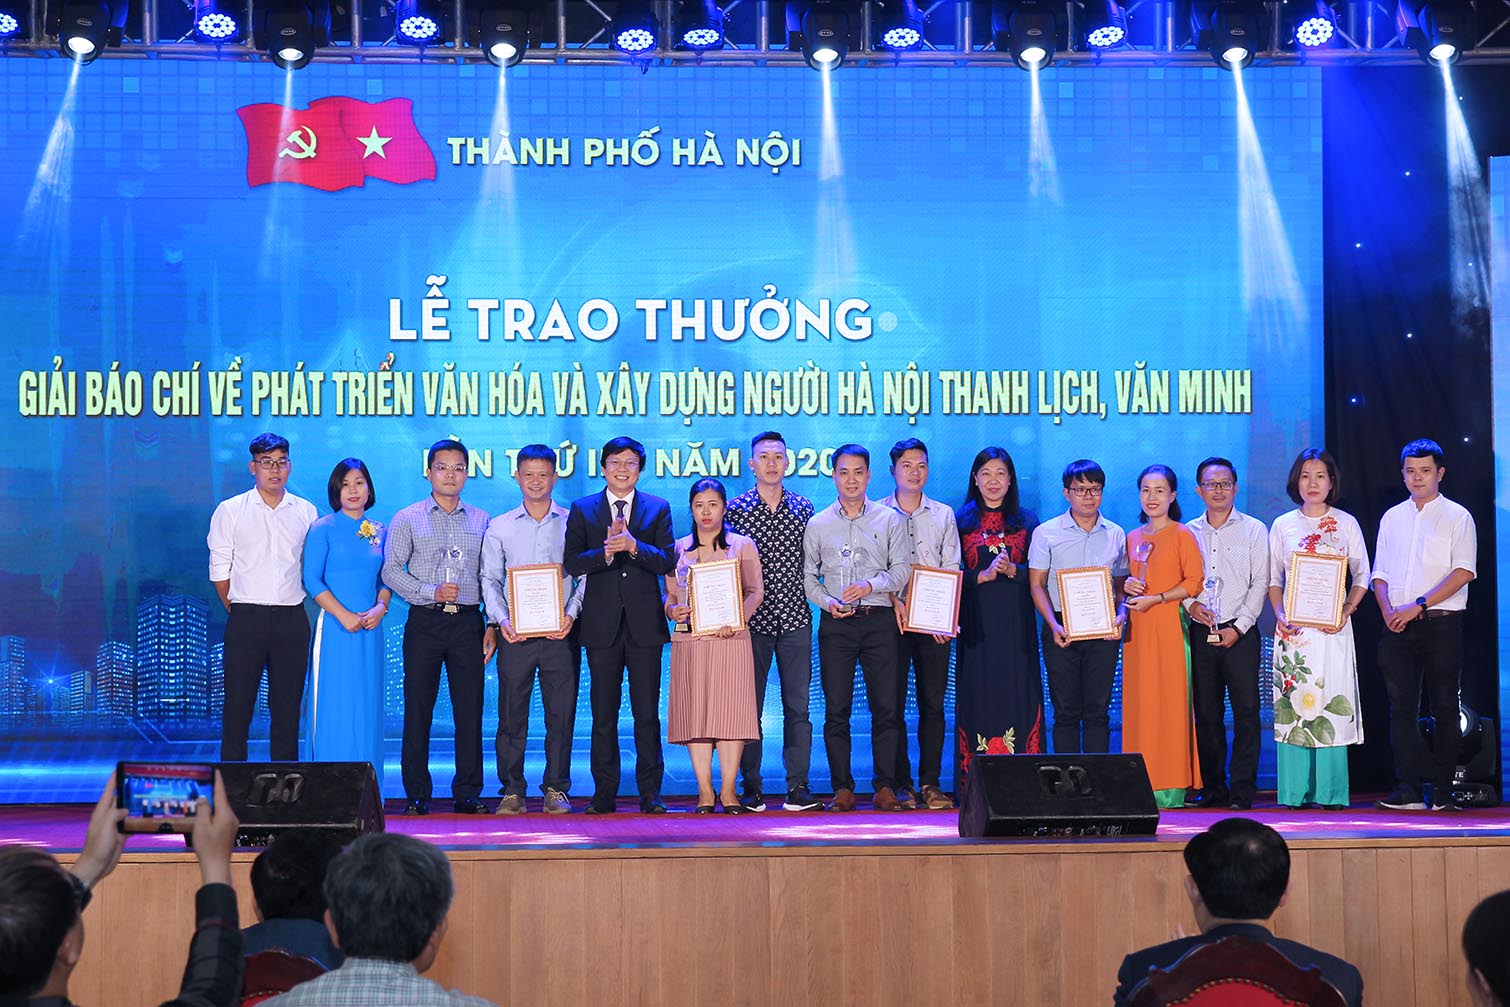 Phó Chủ tịch Thường trực Hội Nhà báo Việt Nam Hồ Quang Lợi trao Giải B Giải Báo chí về Phát triển văn hóa và xây dựng người Hà Nội thanh lịch, văn minh cho các tác giả